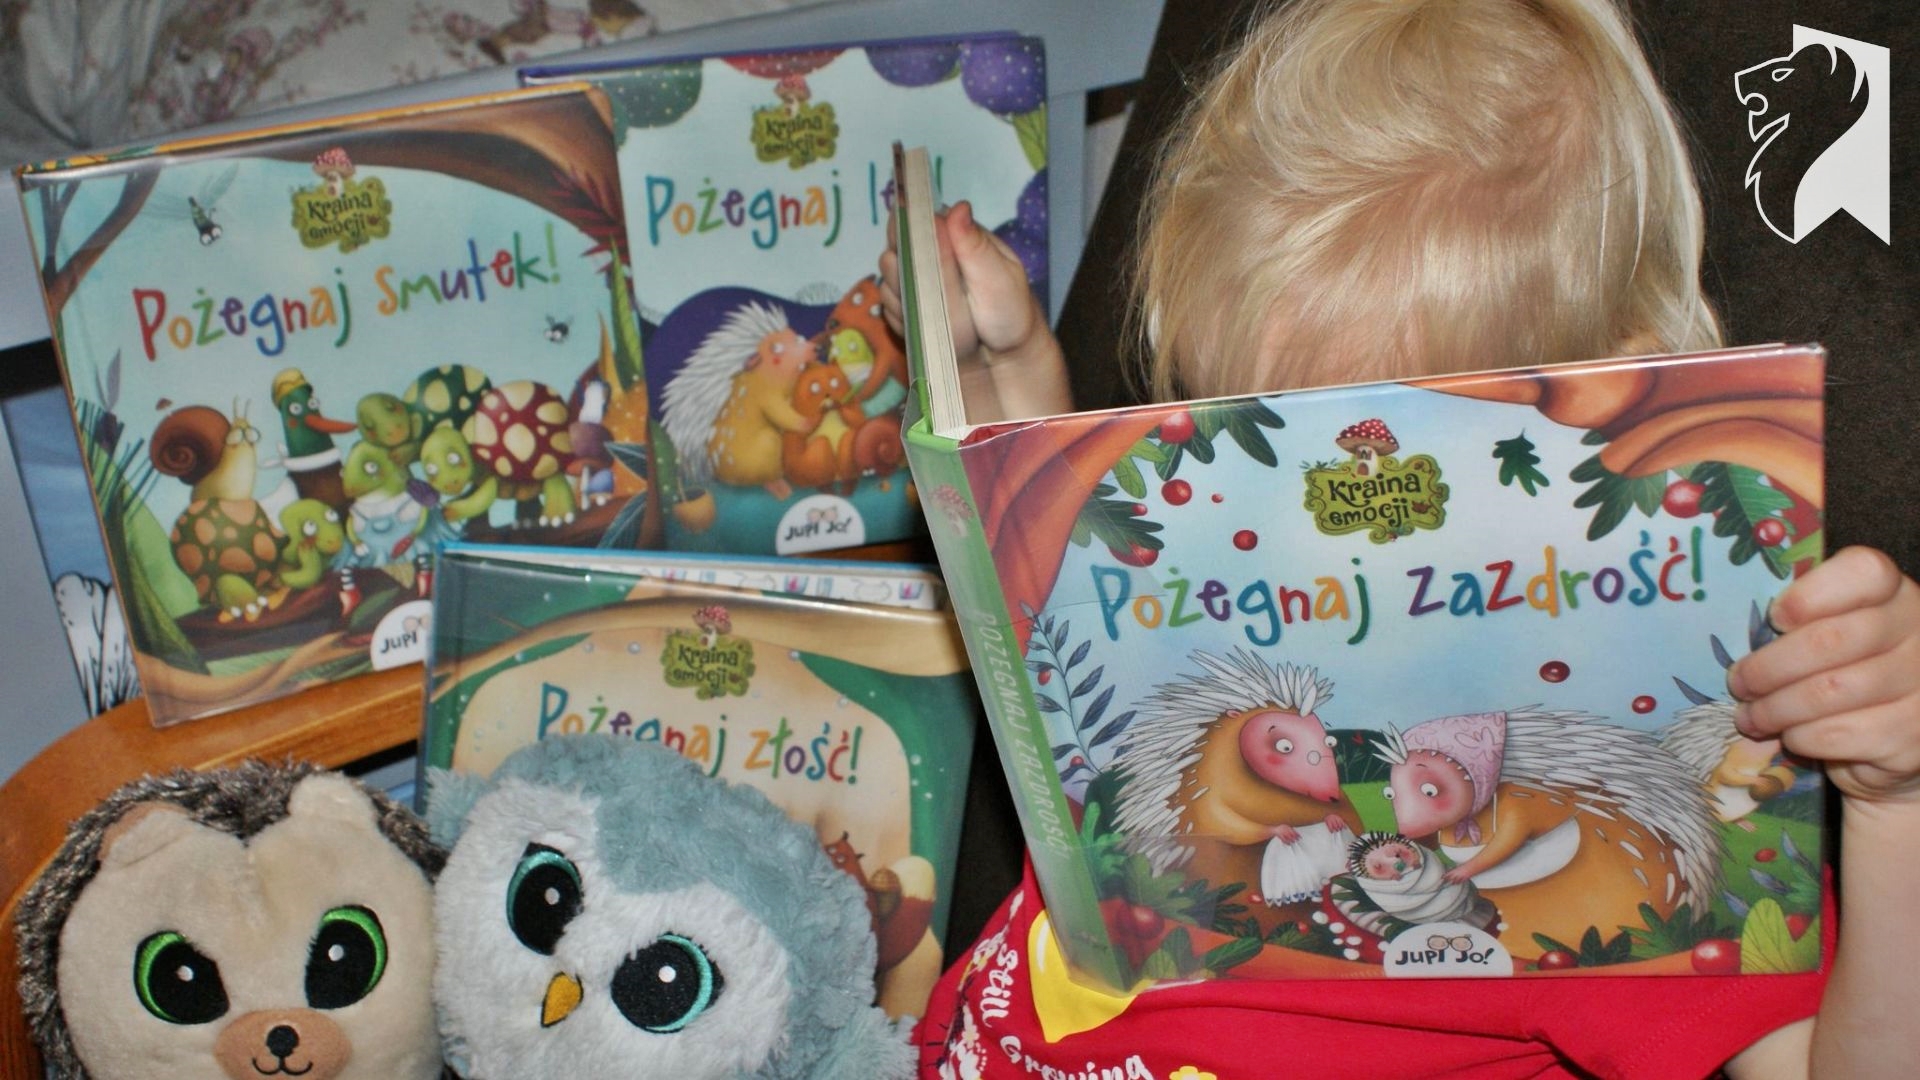 Dziecko trzyma w rękach książkę pt.: Pożegnaj zazdrość. Z lewej strony leżą jeszcze 3 książki tej serii: Pożegnaj smutek, Pożegnaj zazdrość, Pożegnaj lęk. W lewym, dolnym rogu, 2 pluszaki.